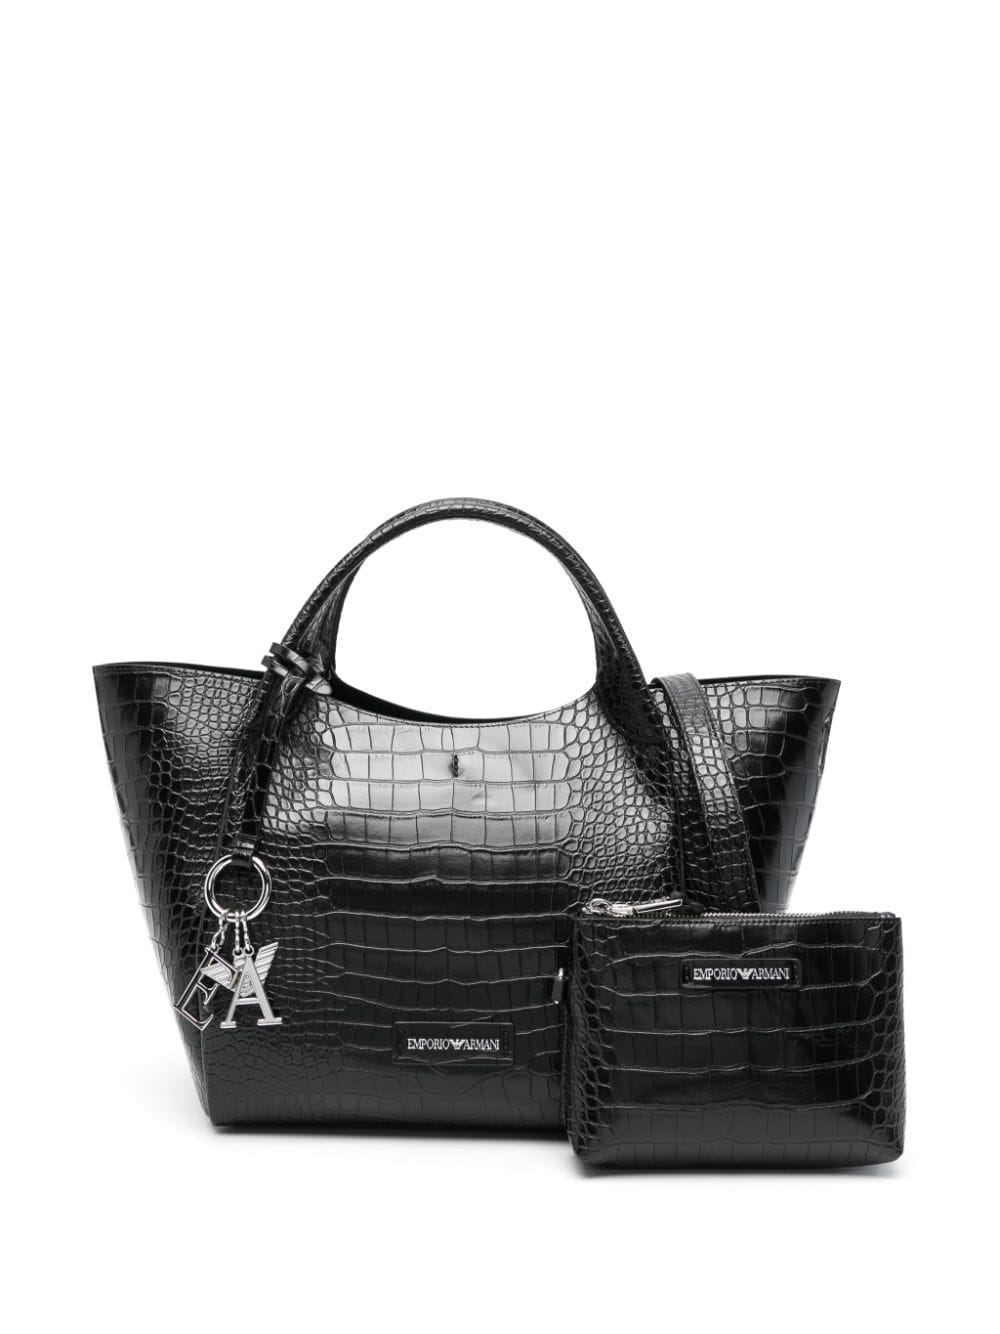 Emporio Armani E.Armani Exclusive Pre Bags.. Black